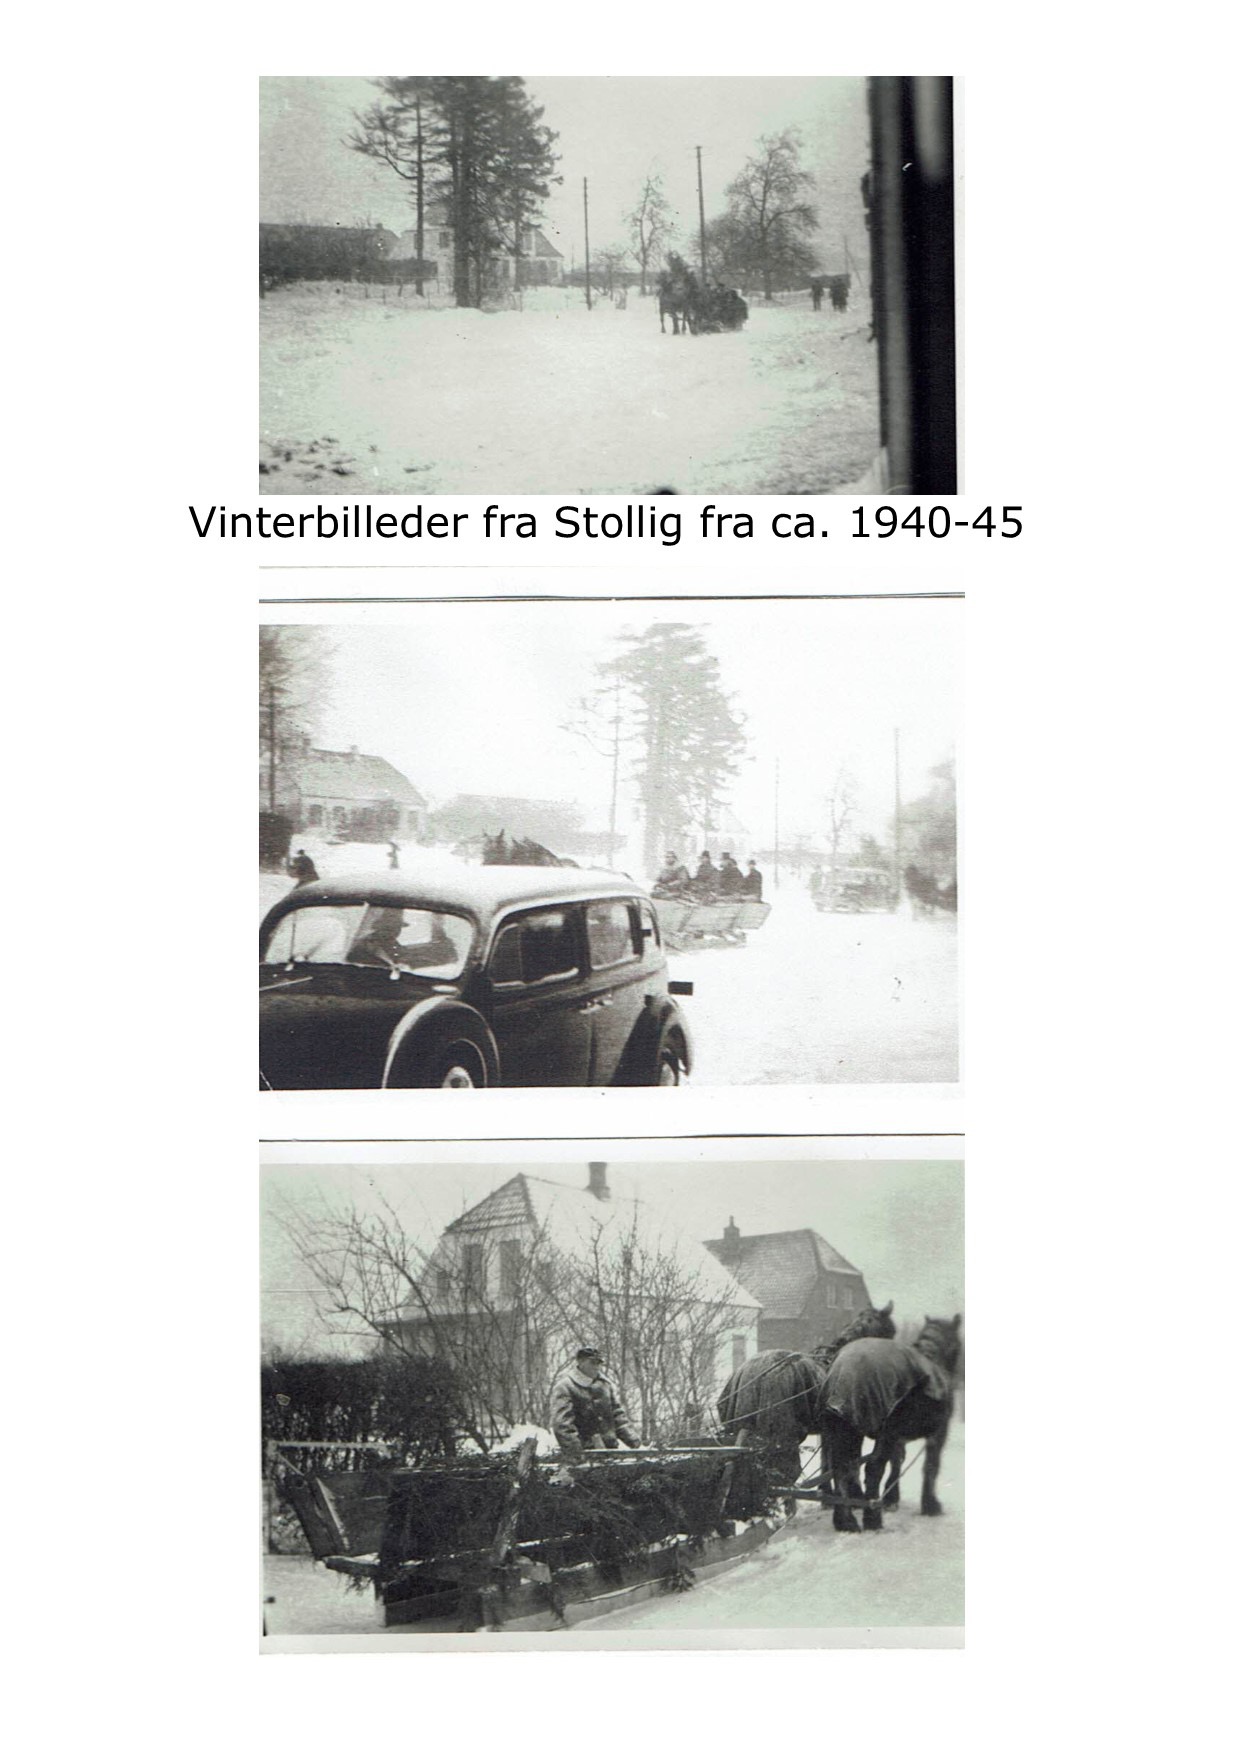 Vinterbilleder fra Stollig 